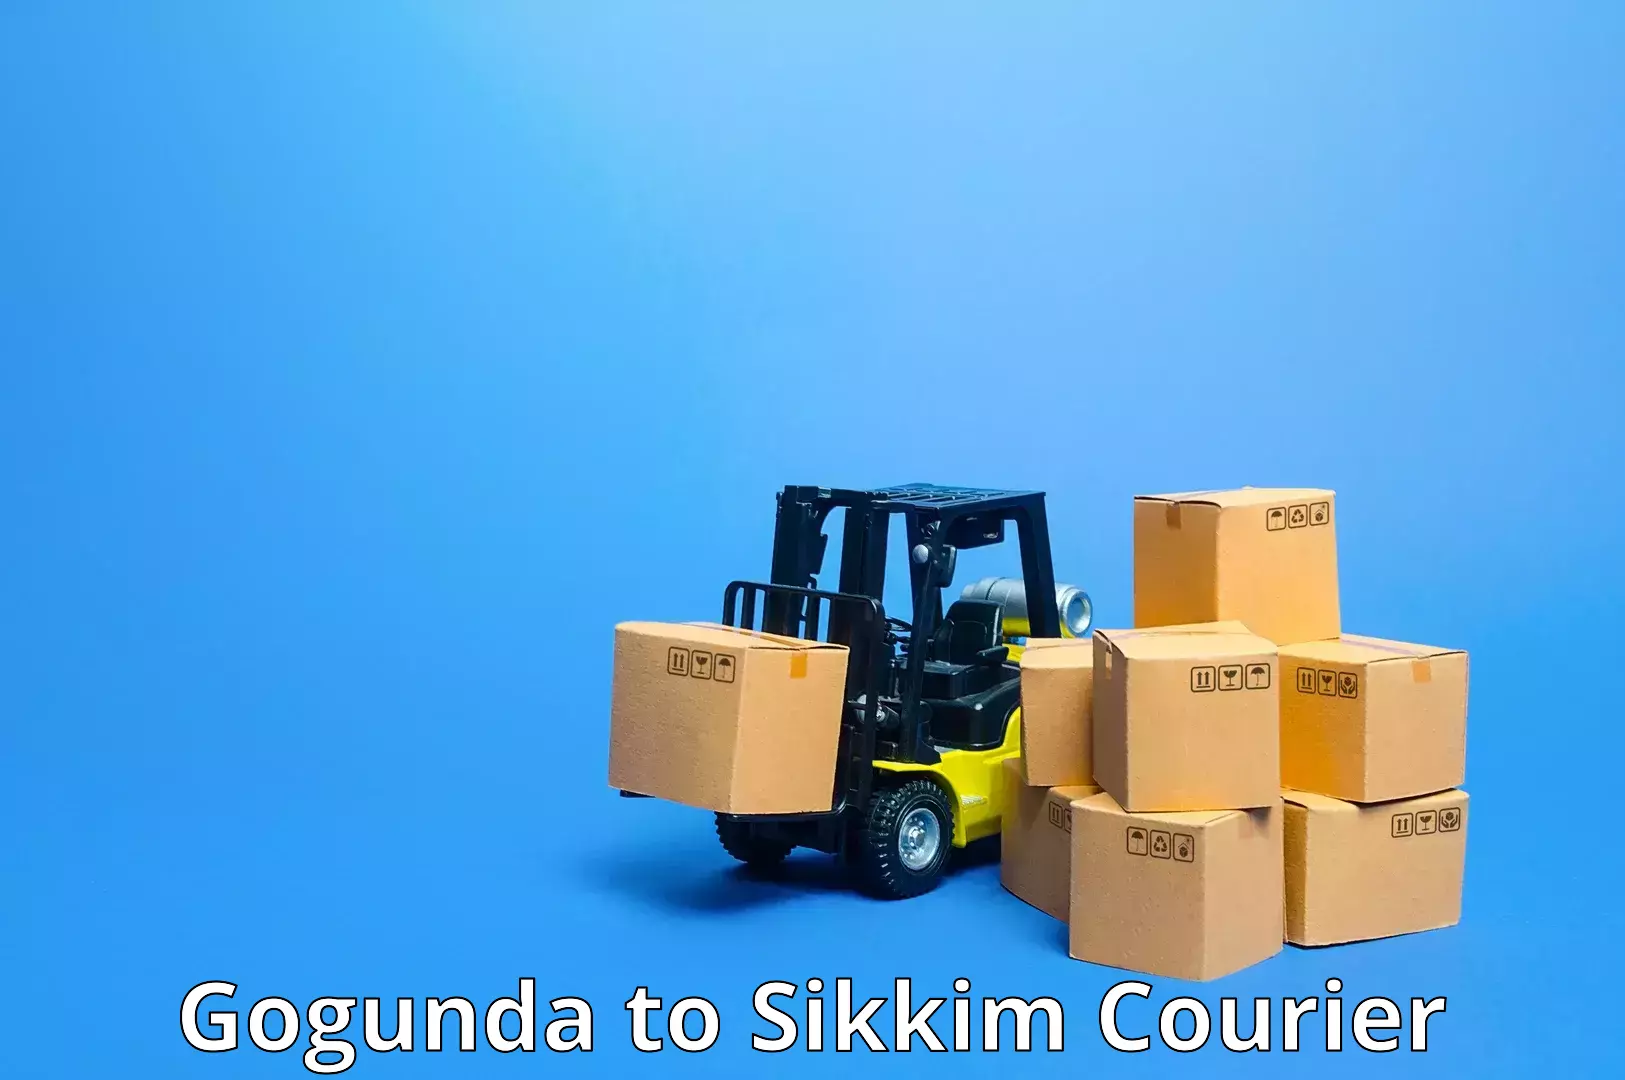 Customer-centric shipping Gogunda to Geyzing